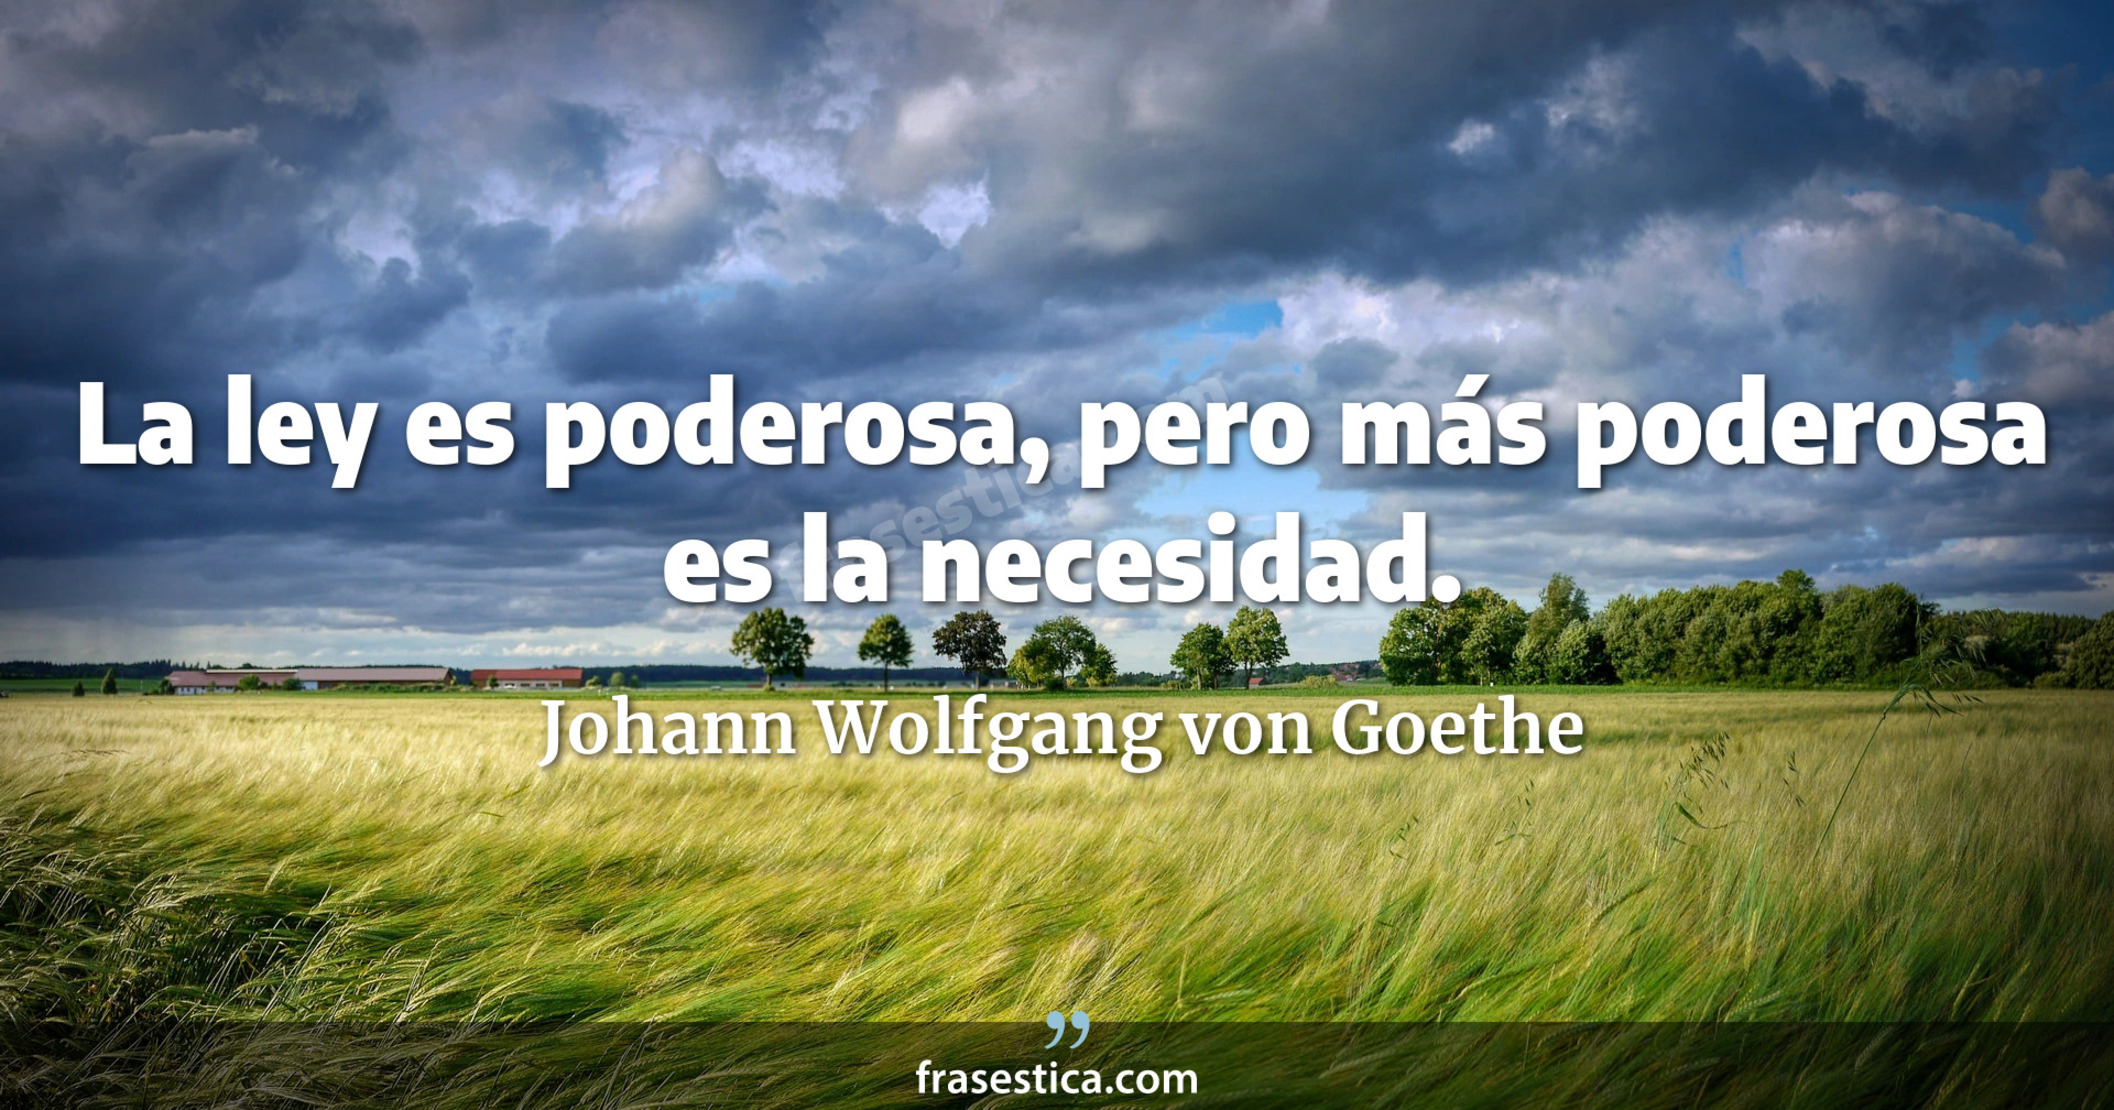 La ley es poderosa, pero más poderosa es la necesidad. - Johann Wolfgang von Goethe